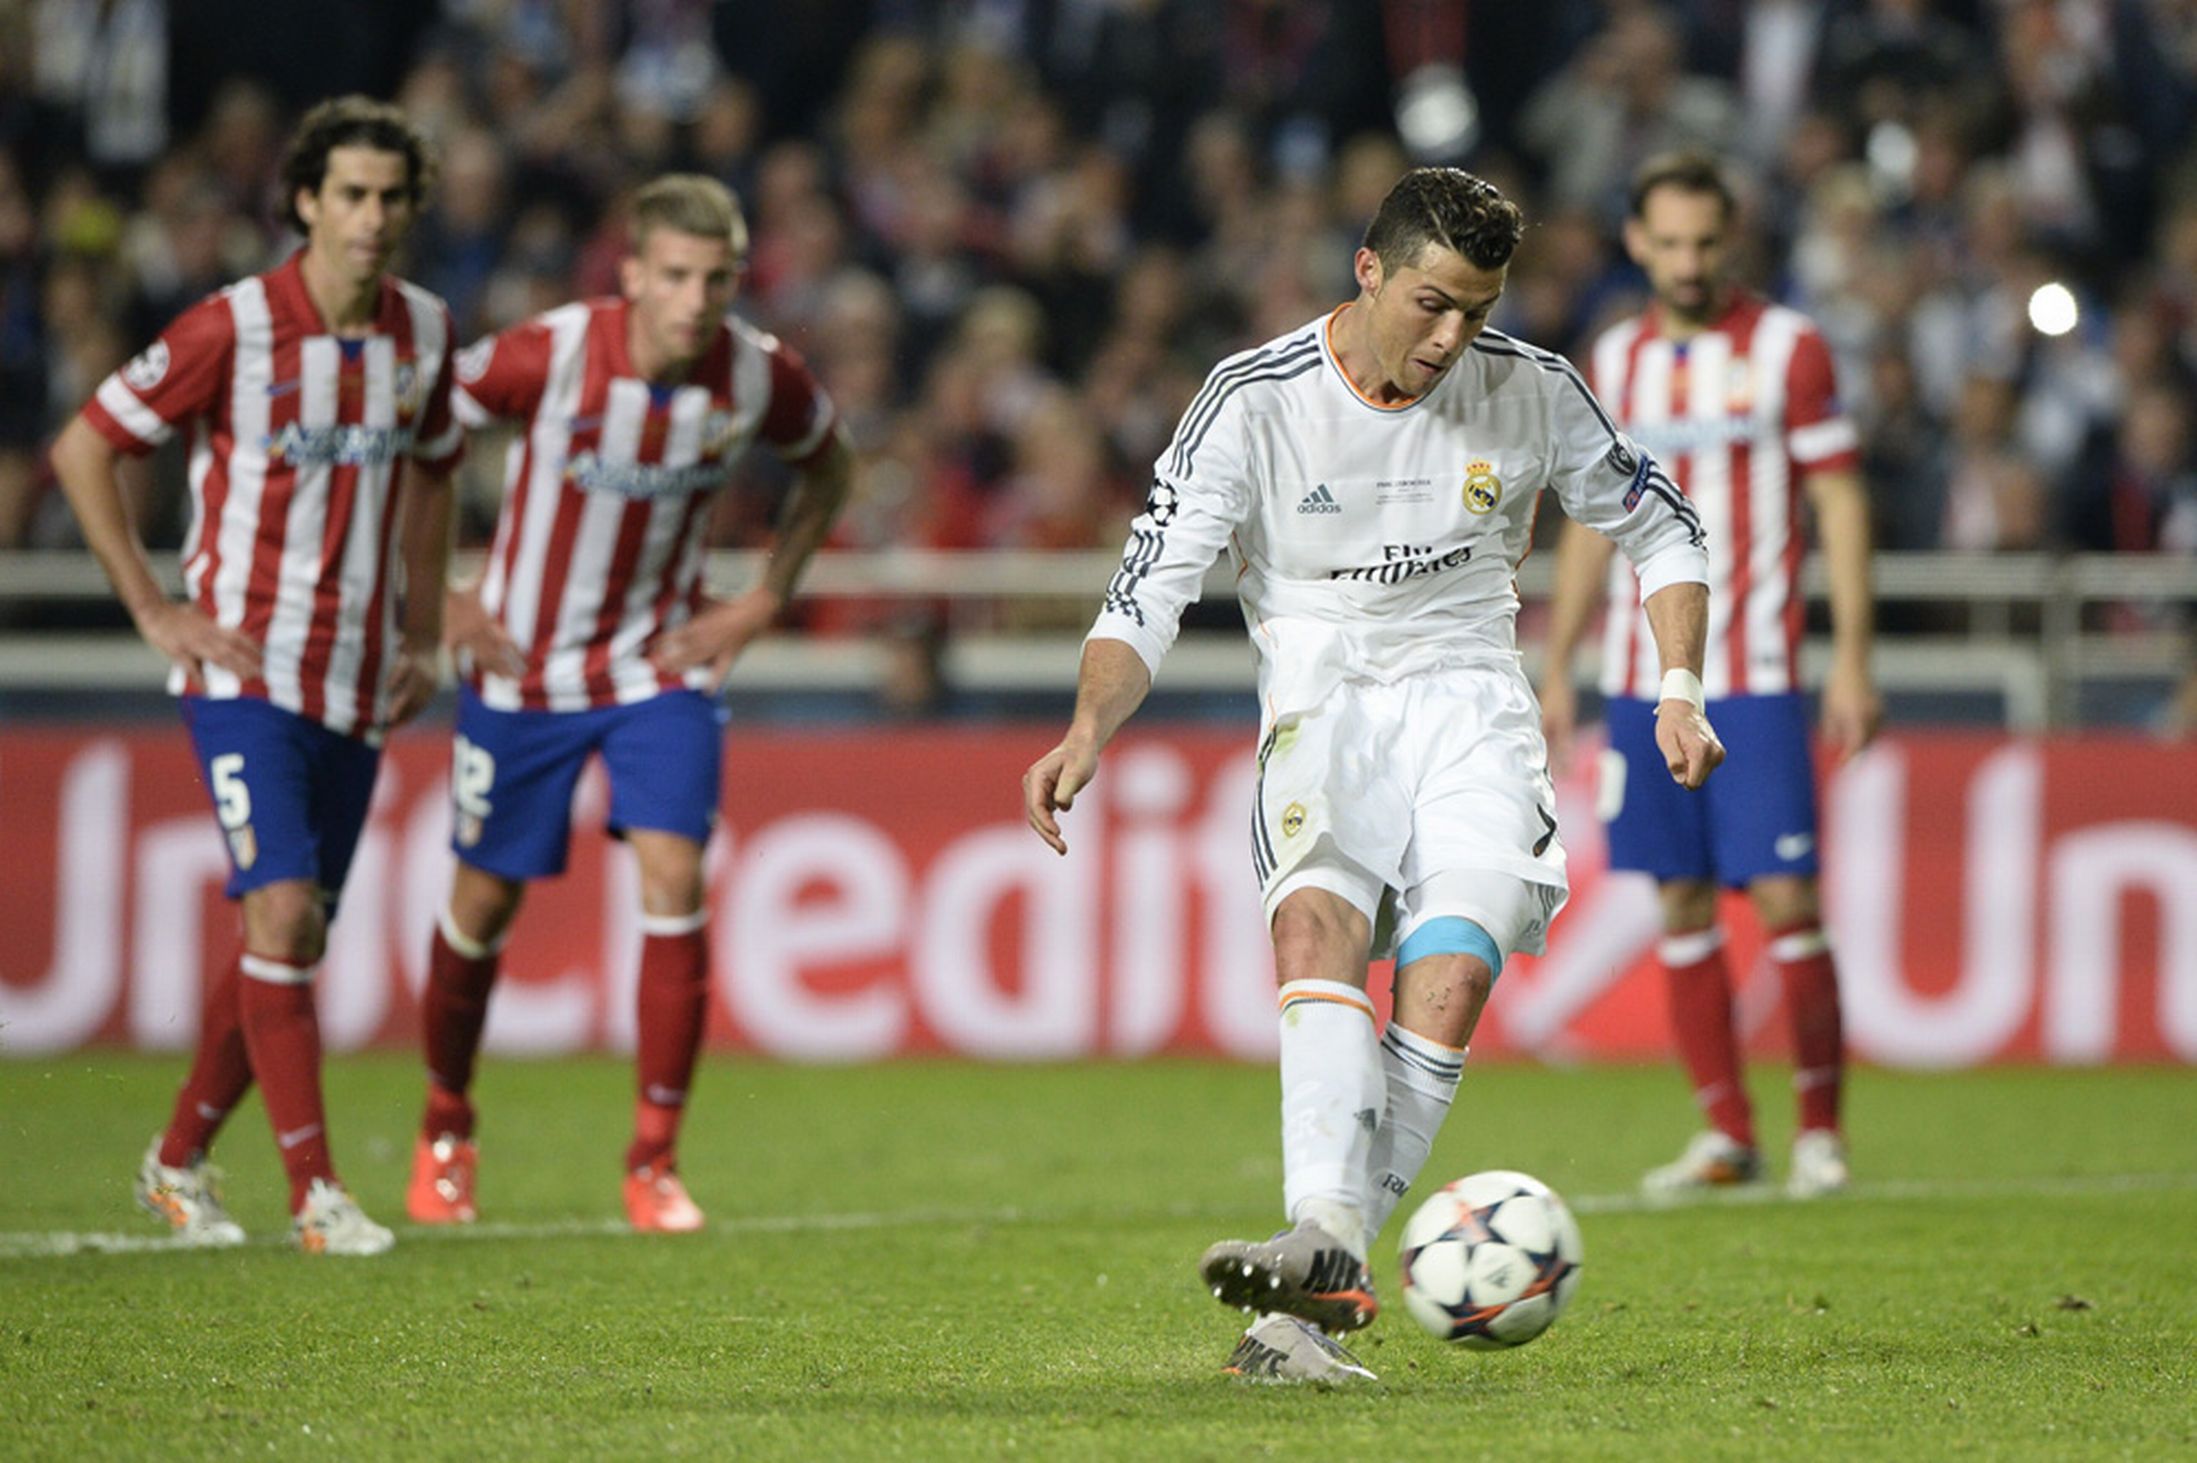 140524_ESP_Real_Madrid_v_Atletico_Madrid_4_1_POR_Cristiano_Ronaldo_scores